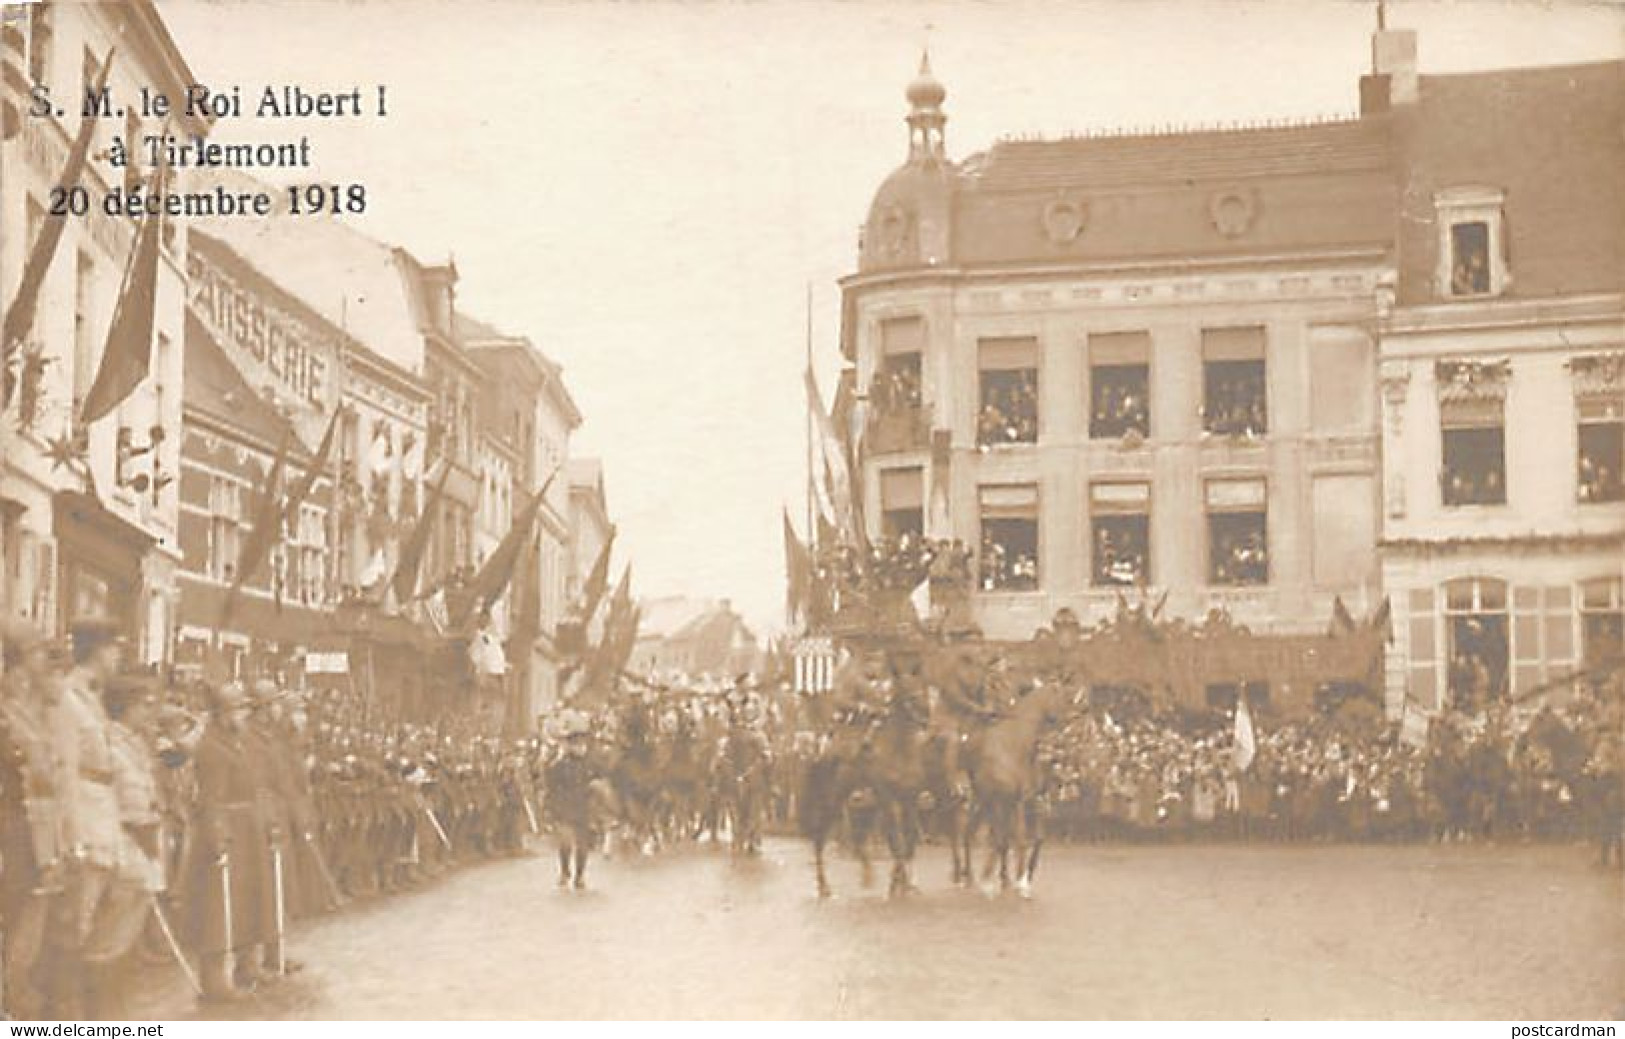 TIENEN (Vl. Br.) Aankomst Van Z.M. Albert I Op 20 December 1918 - FOTOKAART - Tienen